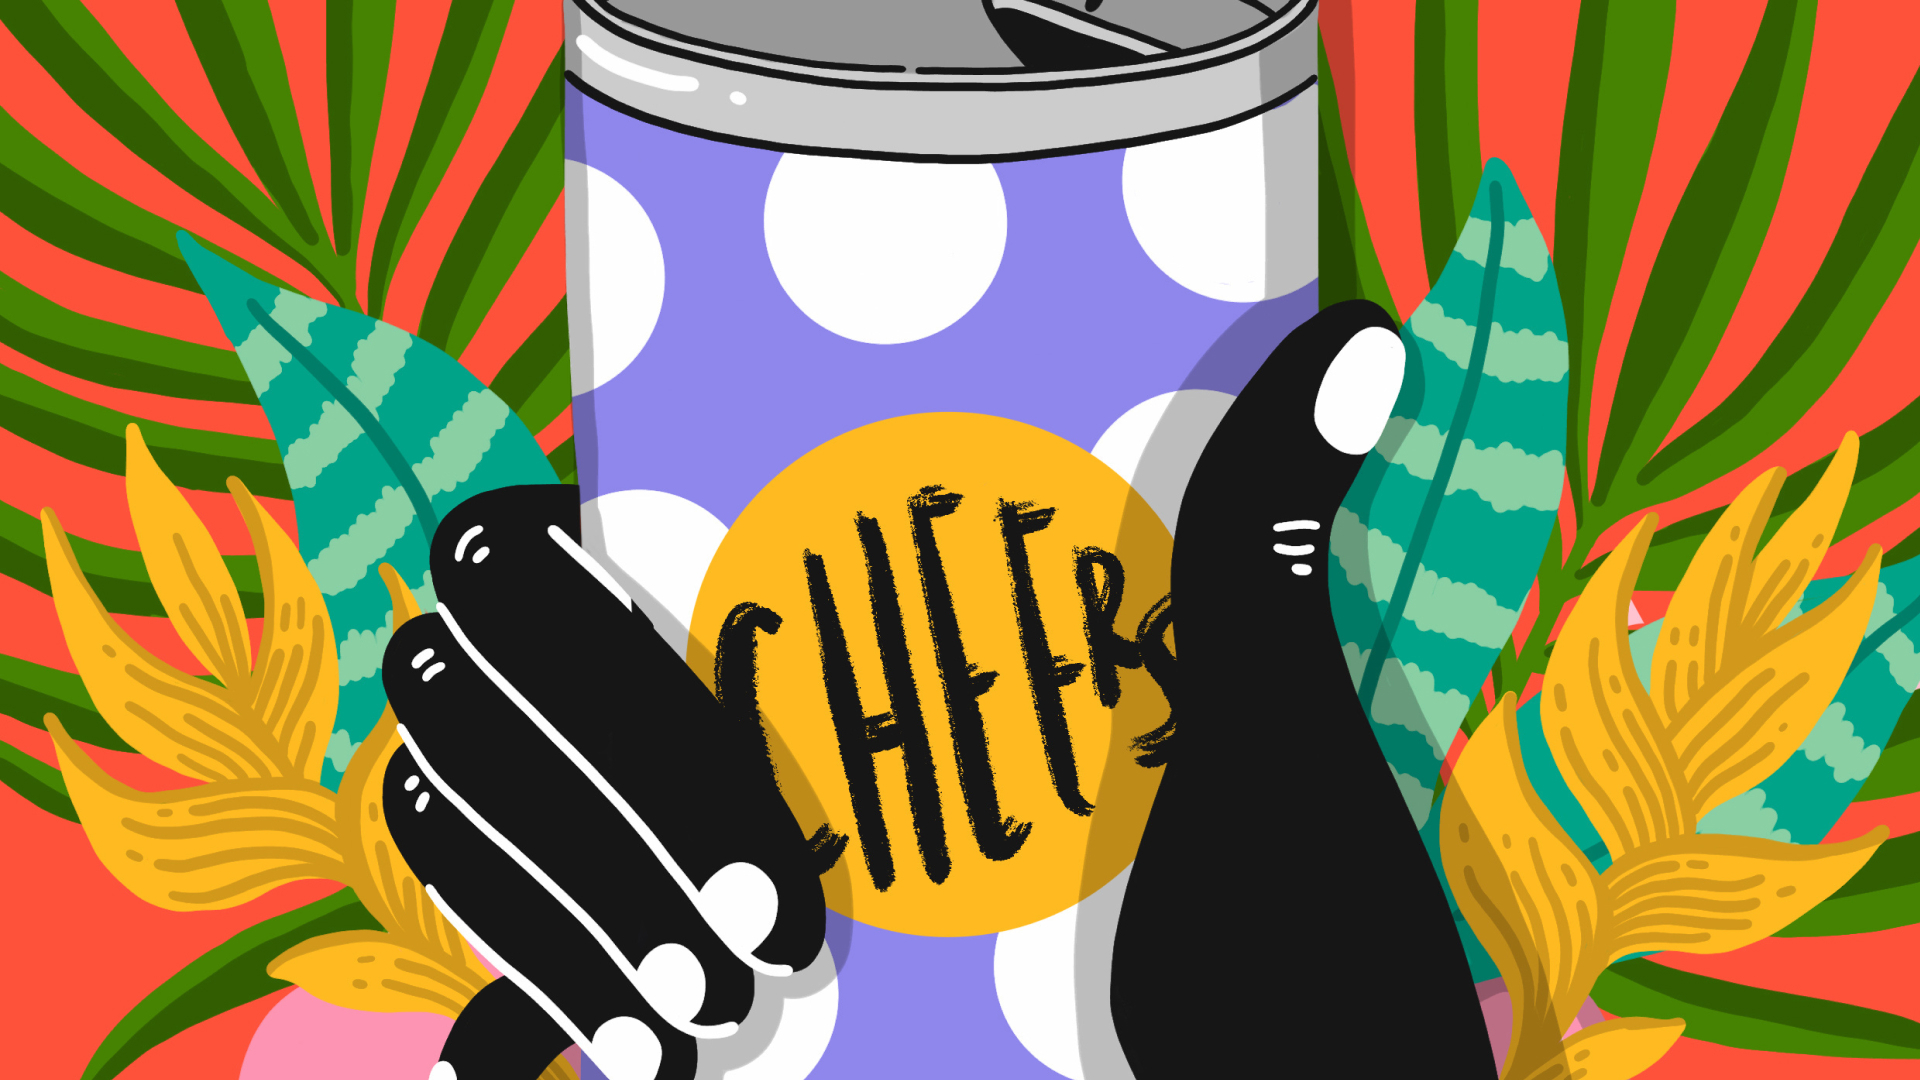 Immagine colorata di una mano che tiene una lattina con la scritta "Cheers".